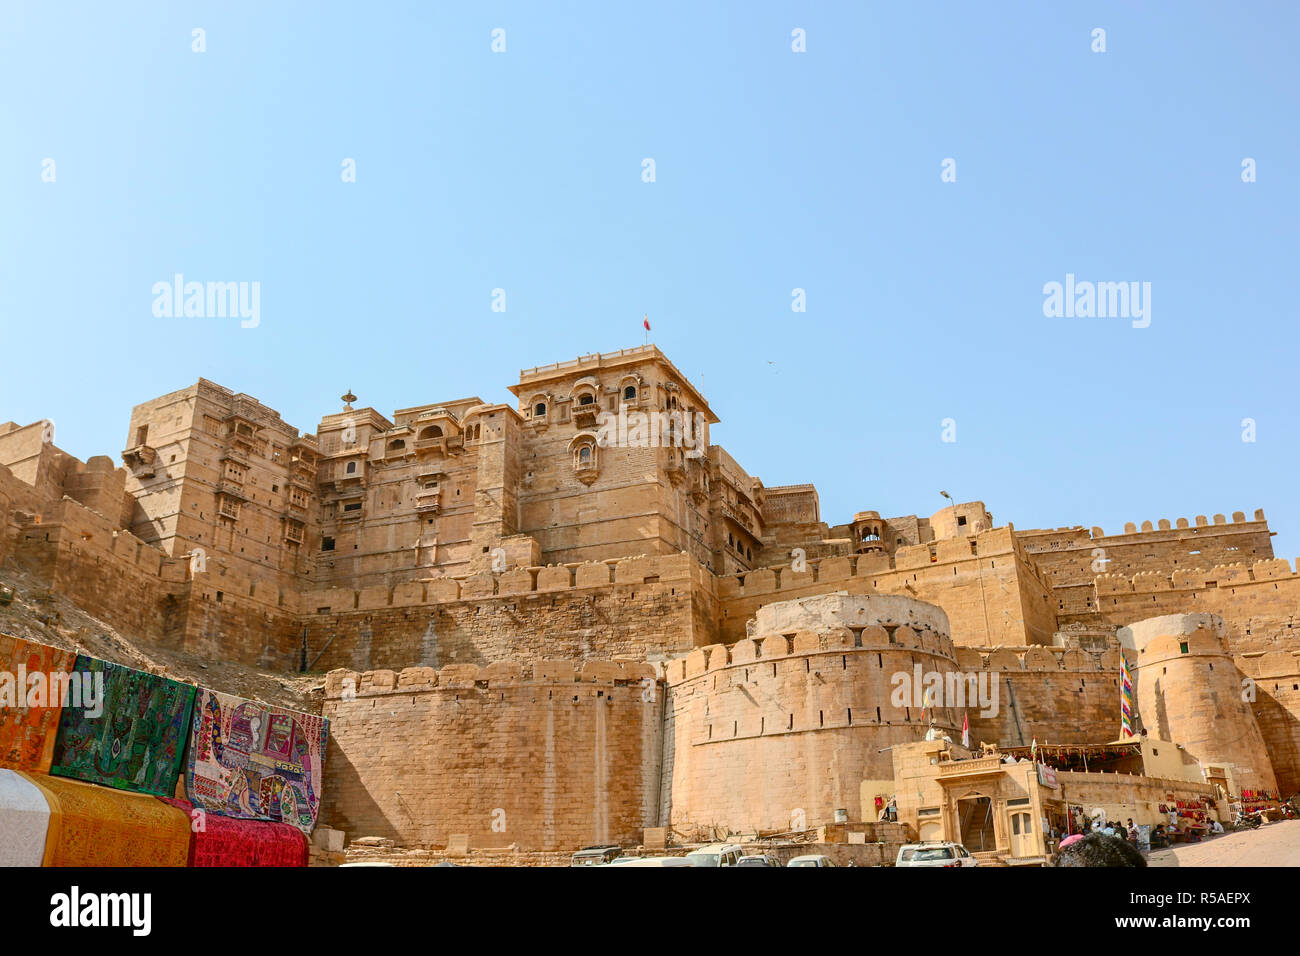 Jaisalmer Fort è la seconda più antica fortezza nel Rajasthan, costruito nel 1156 D.C. dagli Rajput Rawal (righello) Jaisal dal quale deriva il suo nome. Foto Stock